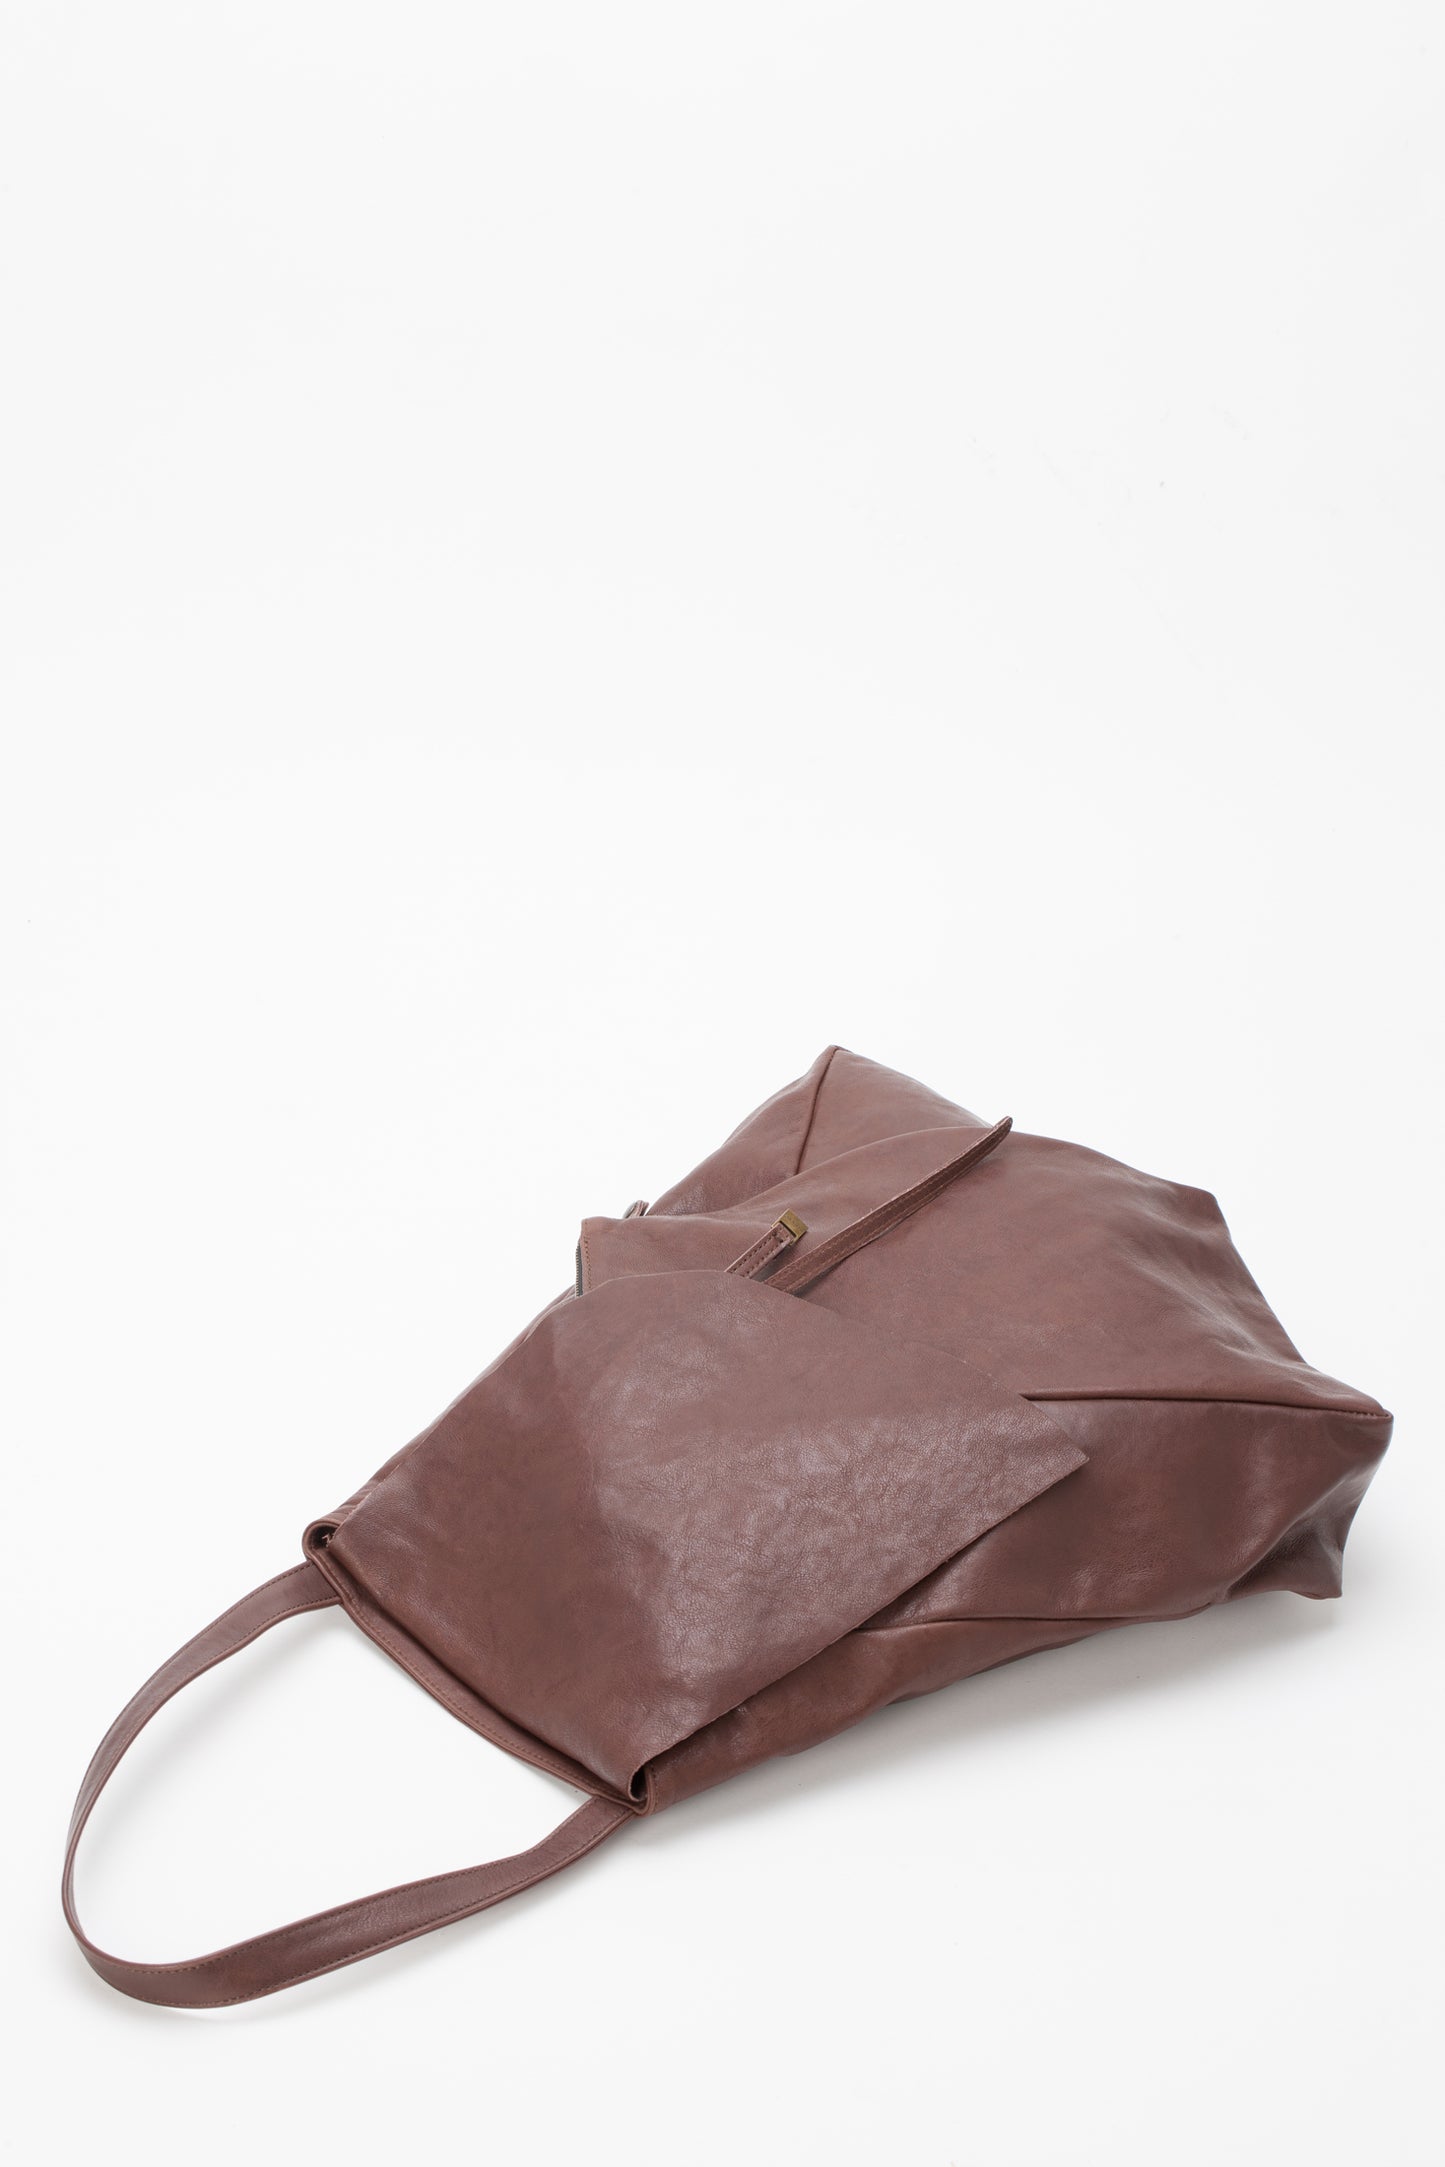 Ferdi tote bag in nappa leather